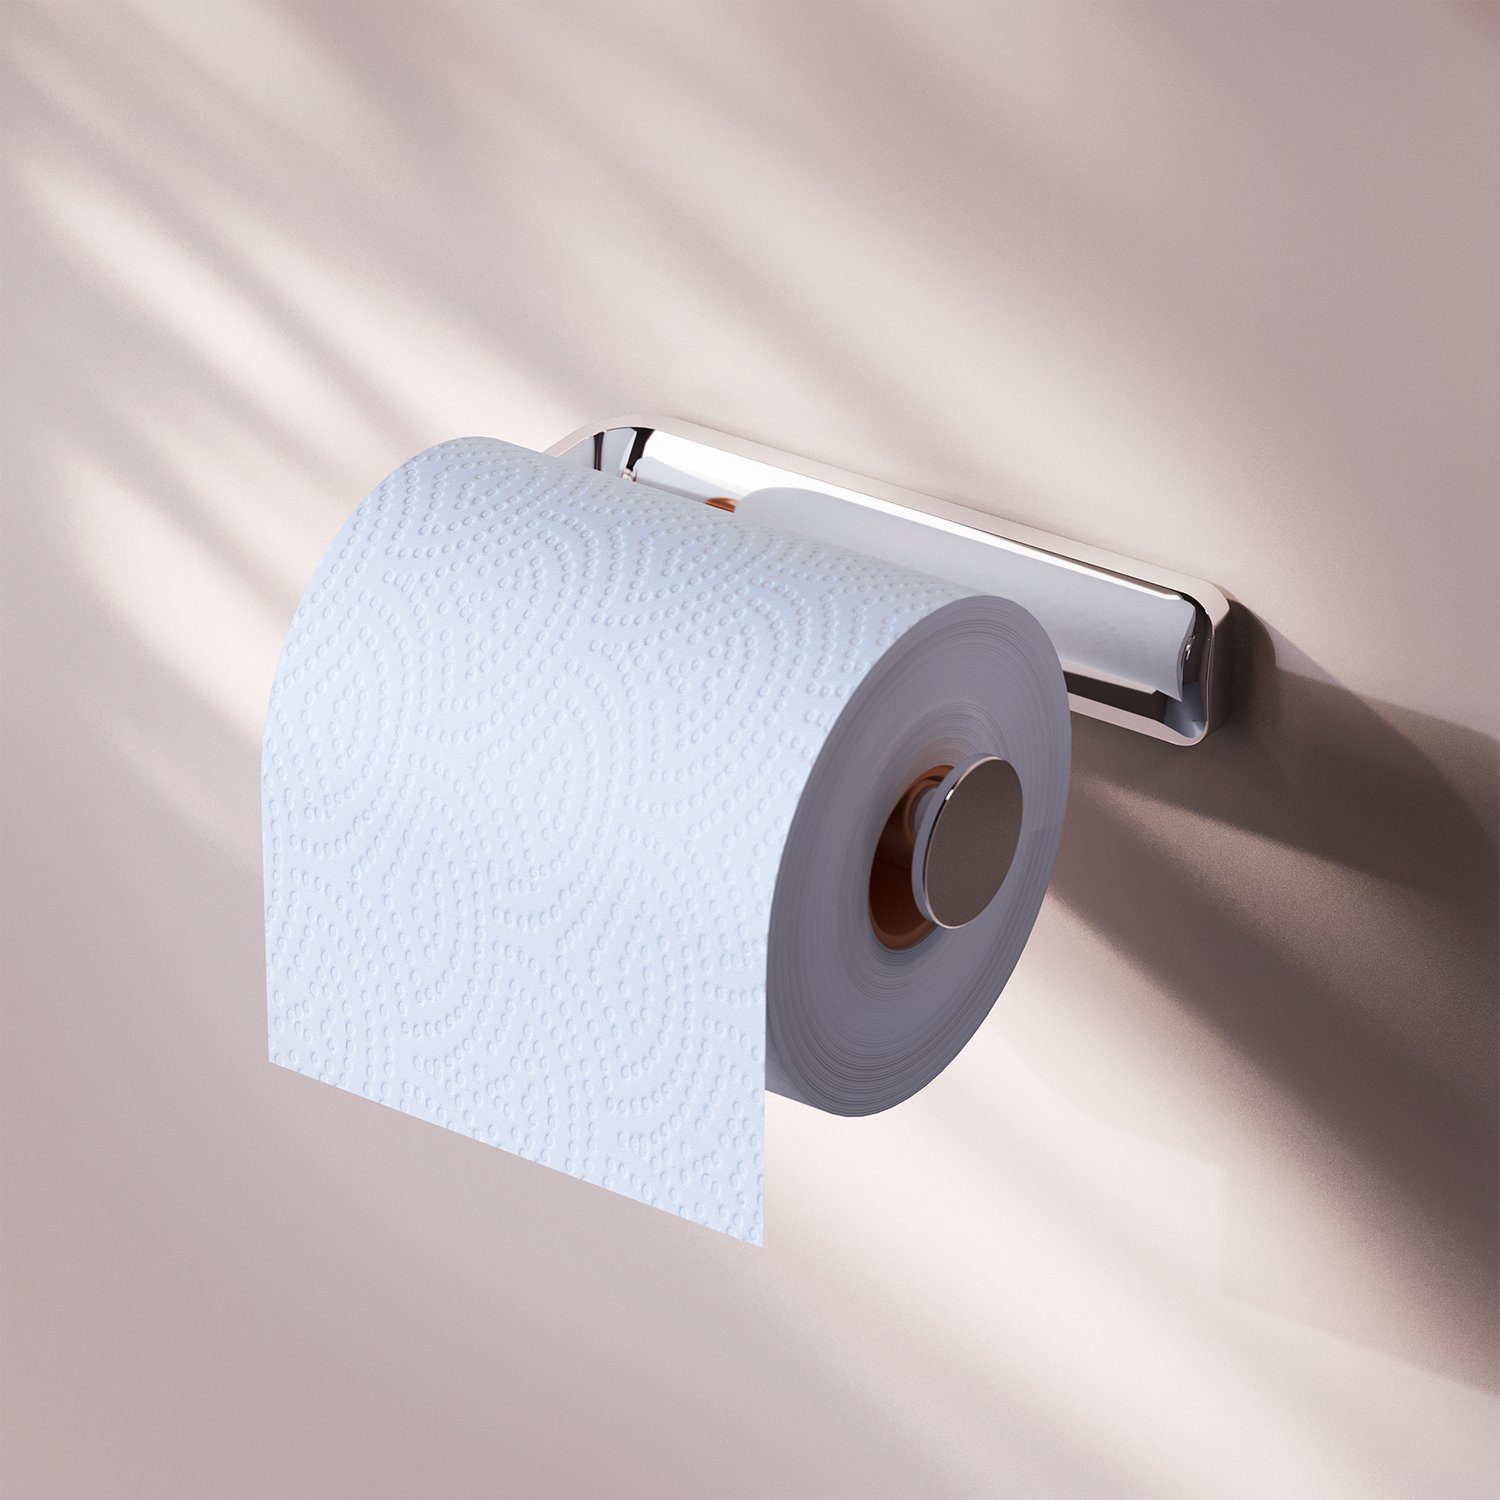 Chrom im 2.0, Inspire und AM.PM Lieferumfang kratz- enthalten Toilettenpapierhalter rostbeständig,Montagesatz